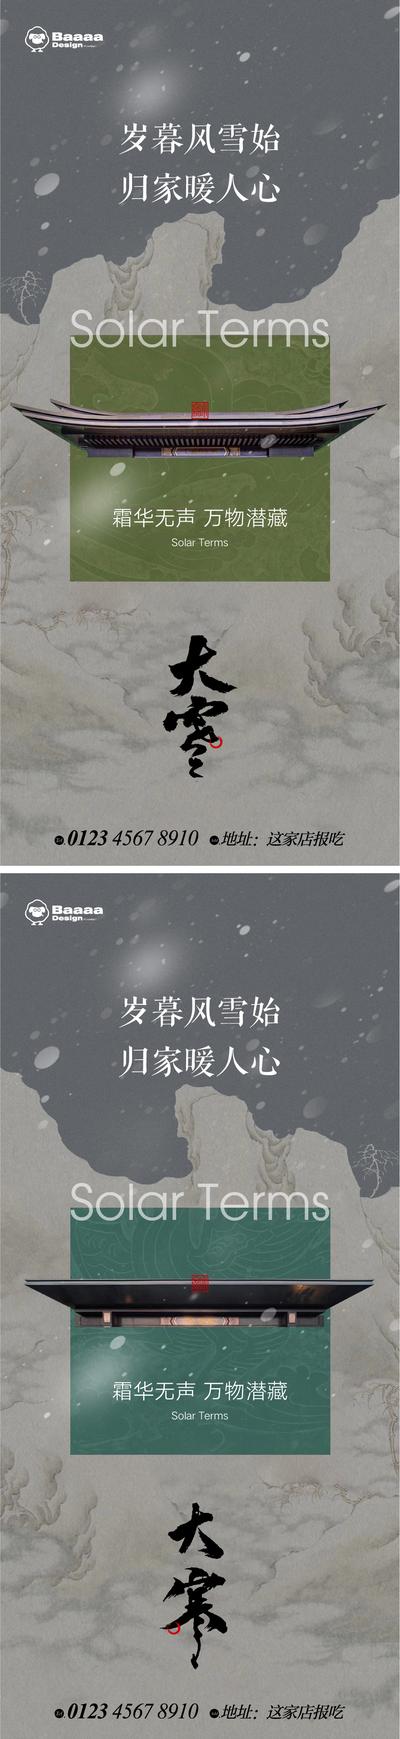 南门网 广告 中式 系列 大雪 冬至 小寒 大寒 雪 笔触 毛笔字 新中式 庭院 背景 大气 刷屏 价值